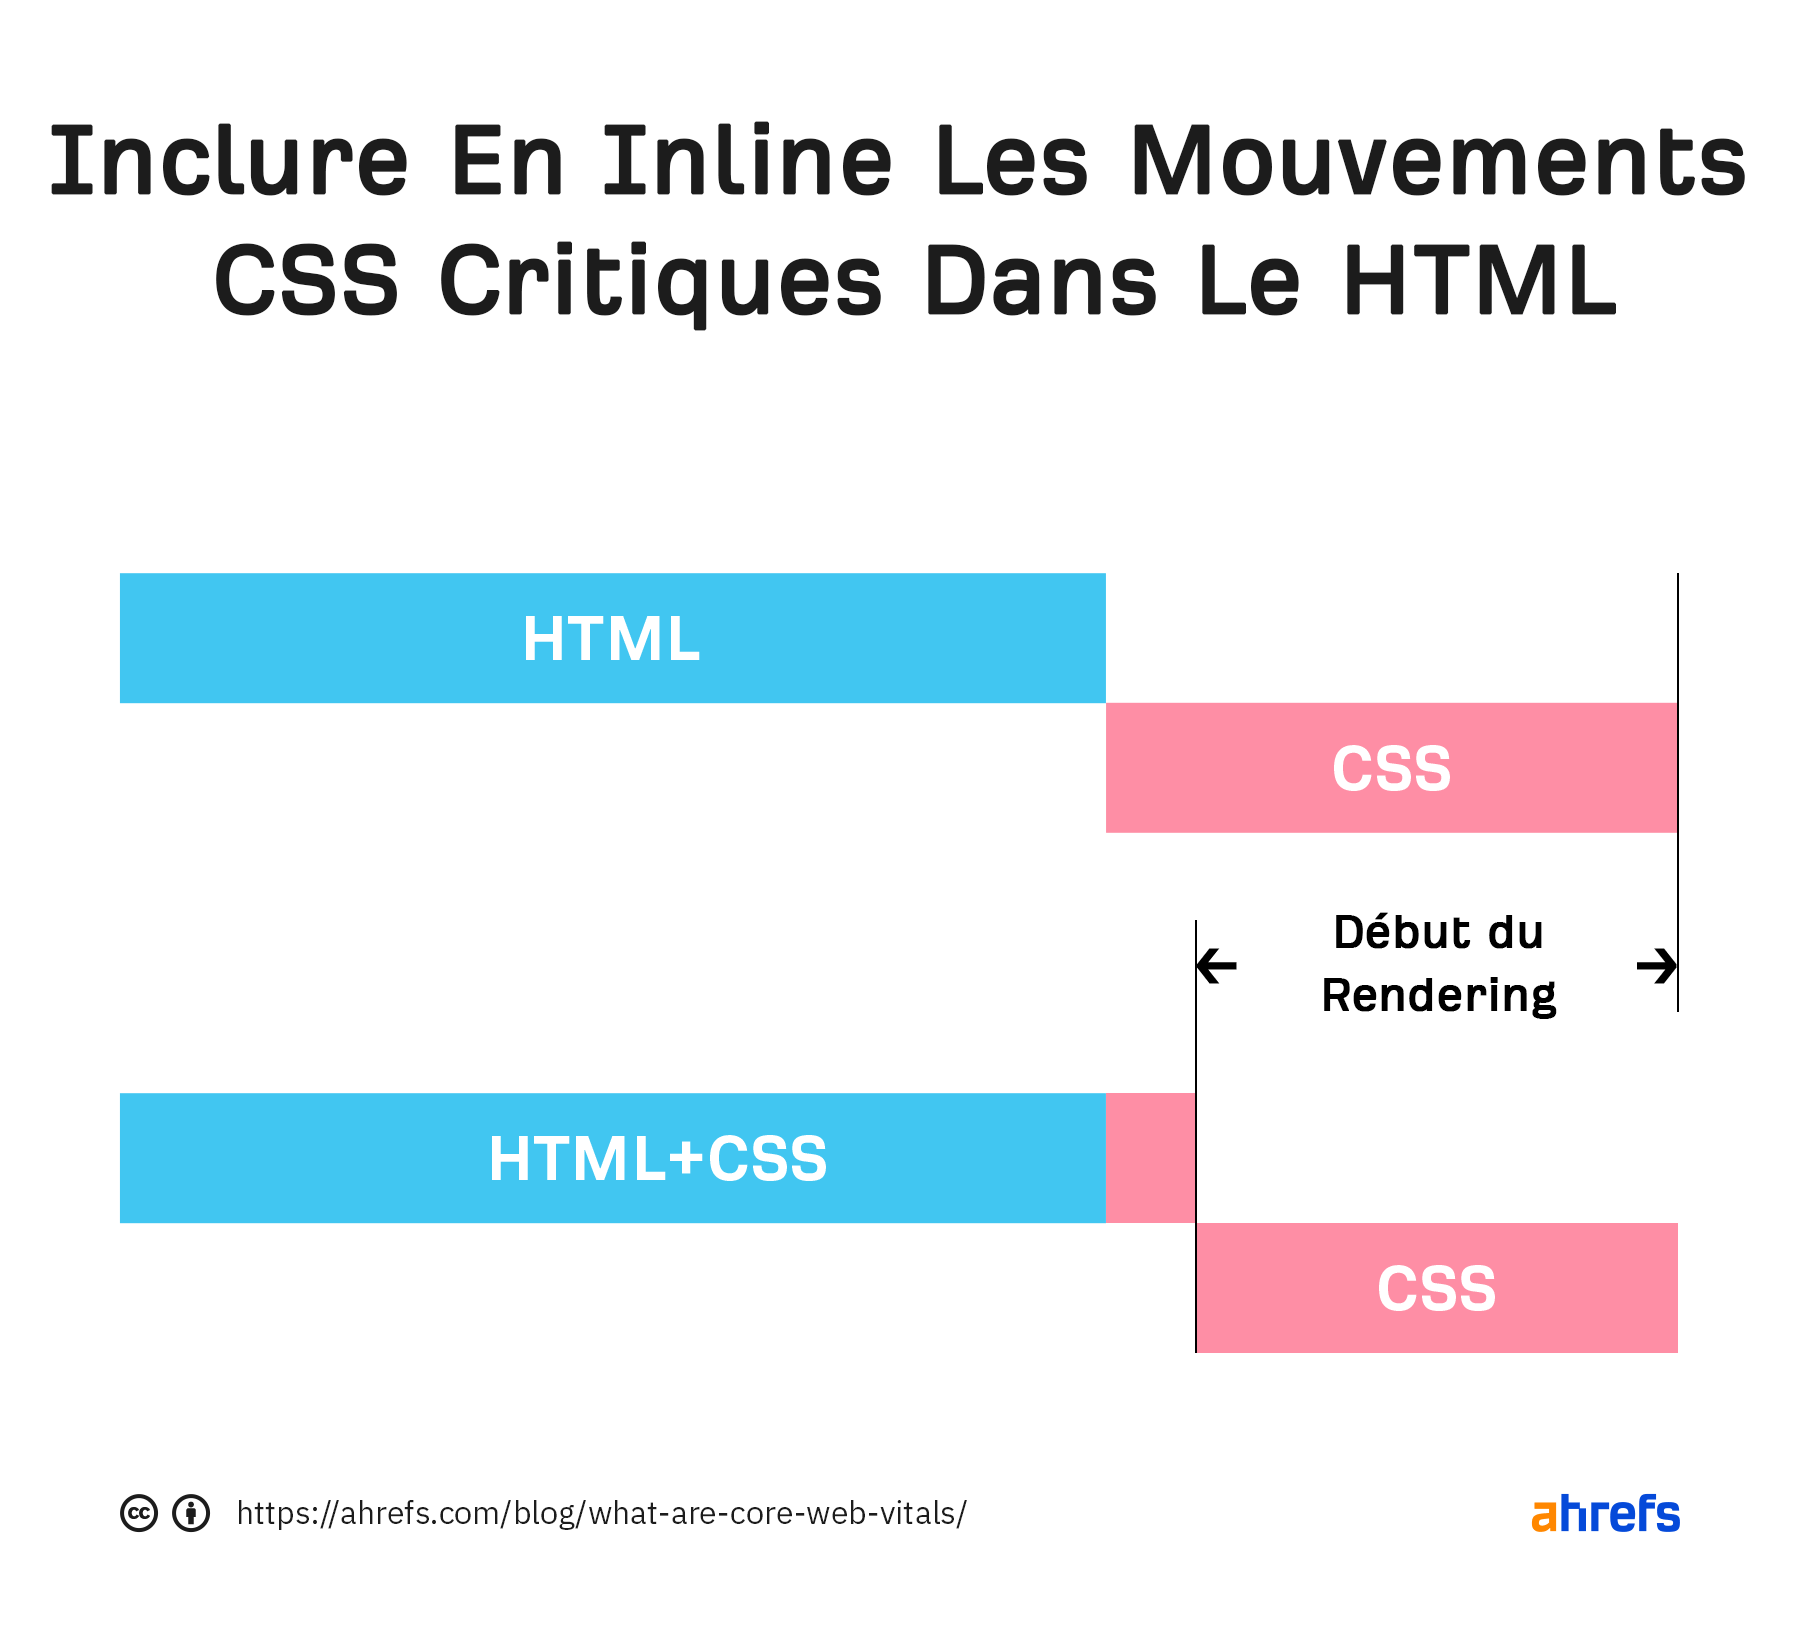 Mettre le CSS critique en inline déplace des parties du CSS dans le HTML